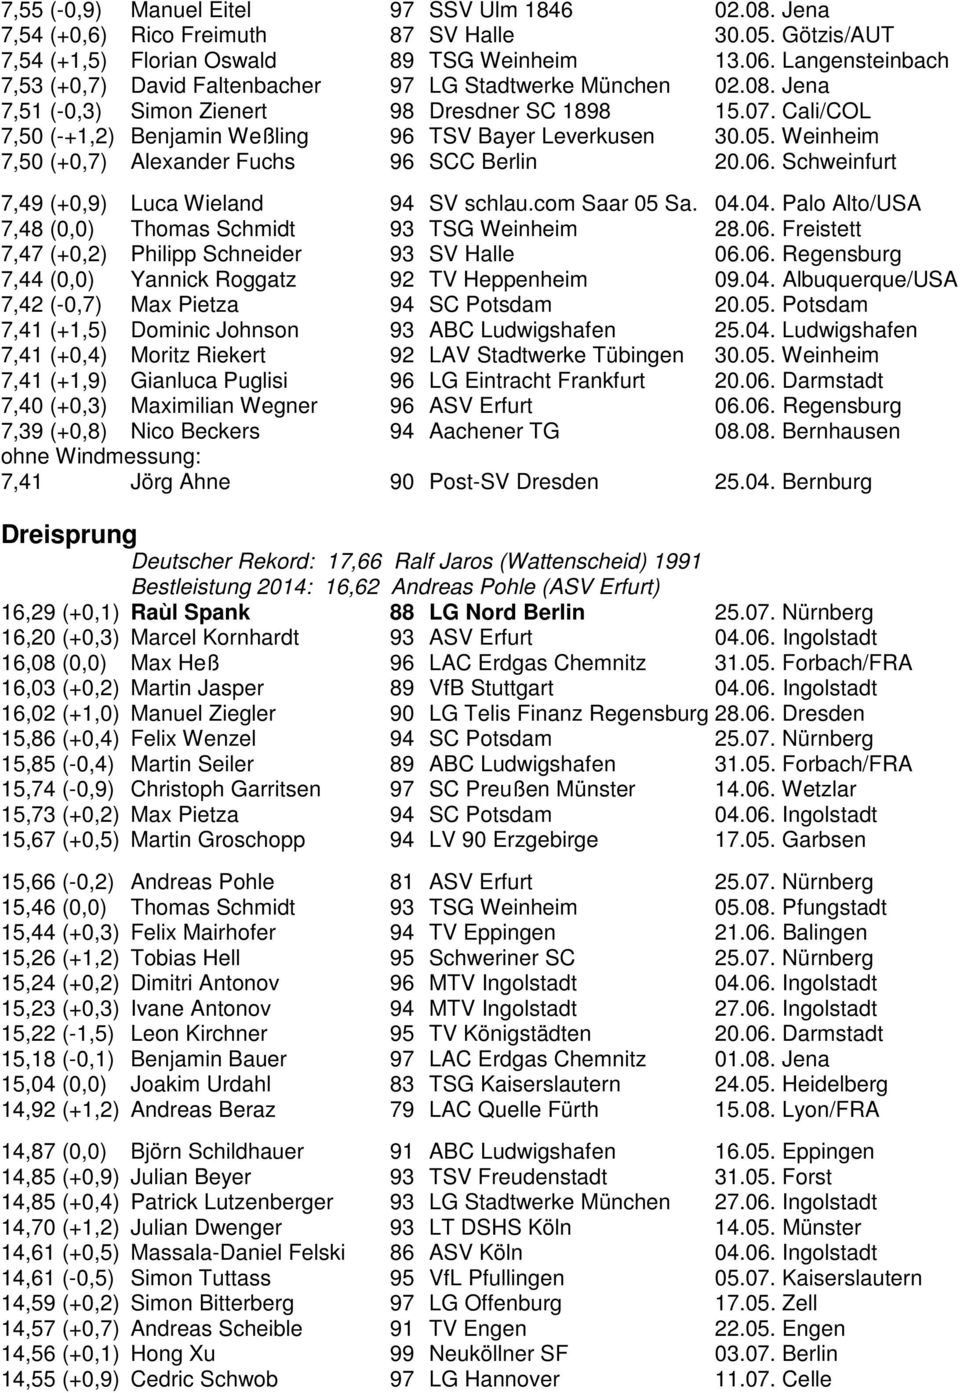 Cali/COL 7,50 (-+1,2) Benjamin Weßling 96 TSV Bayer Leverkusen 30.05. Weinheim 7,50 (+0,7) Alexander Fuchs 96 SCC Berlin 20.06. Schweinfurt 7,49 (+0,9) Luca Wieland 94 SV schlau.com Saar 05 Sa. 04.